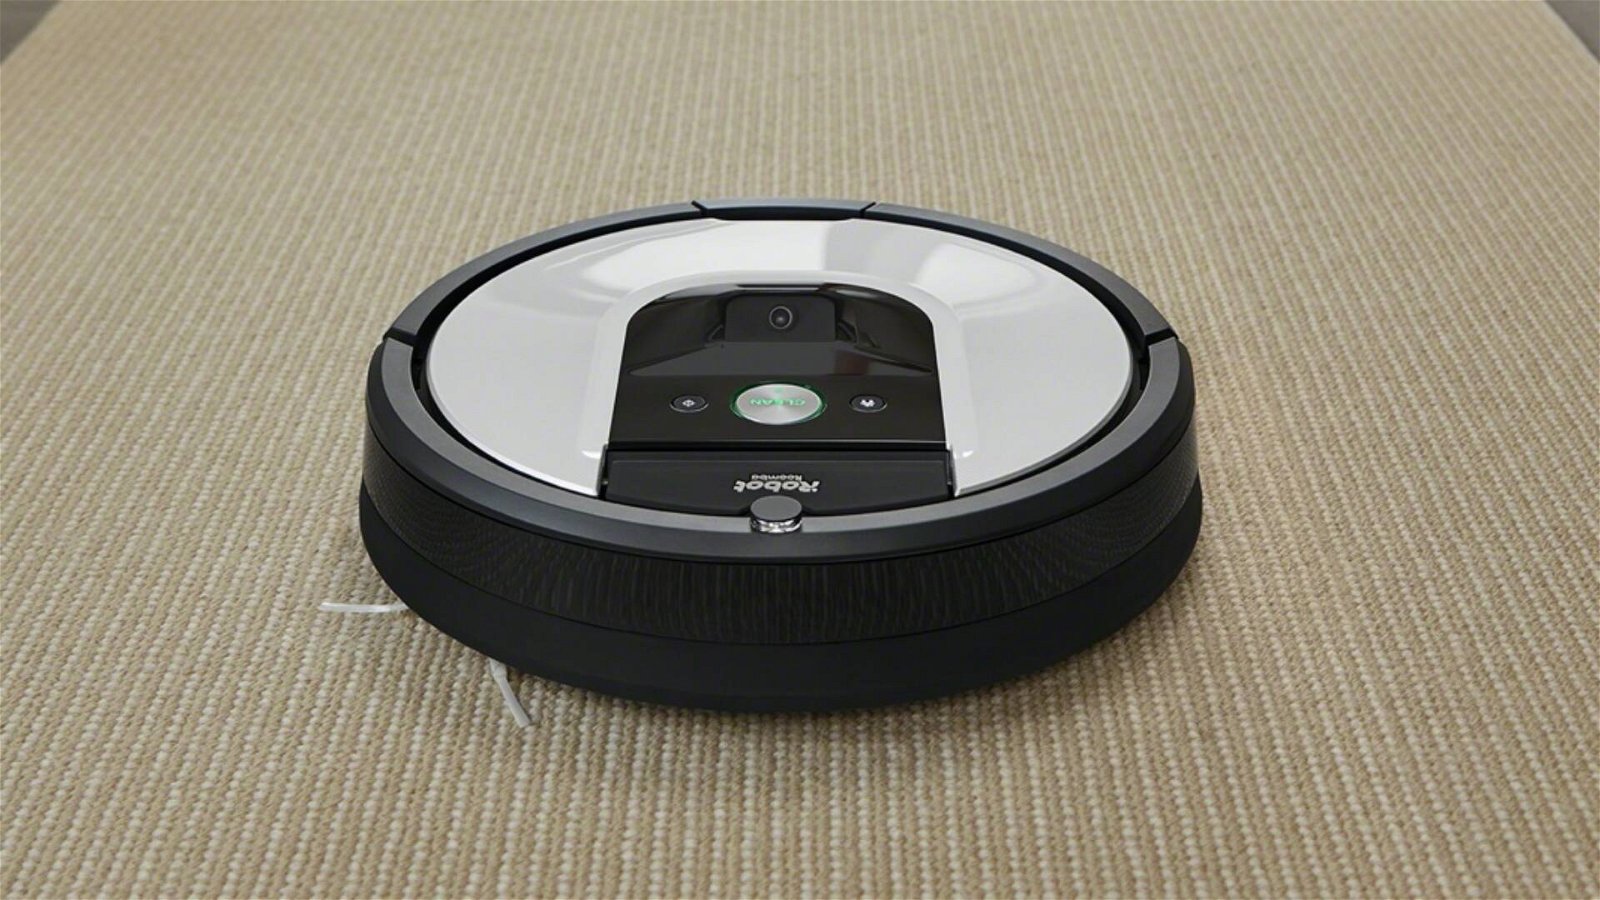 Immagine di Offerte del giorno Amazon: aspirapolvere robot Roomba 971 a meno di 400€!